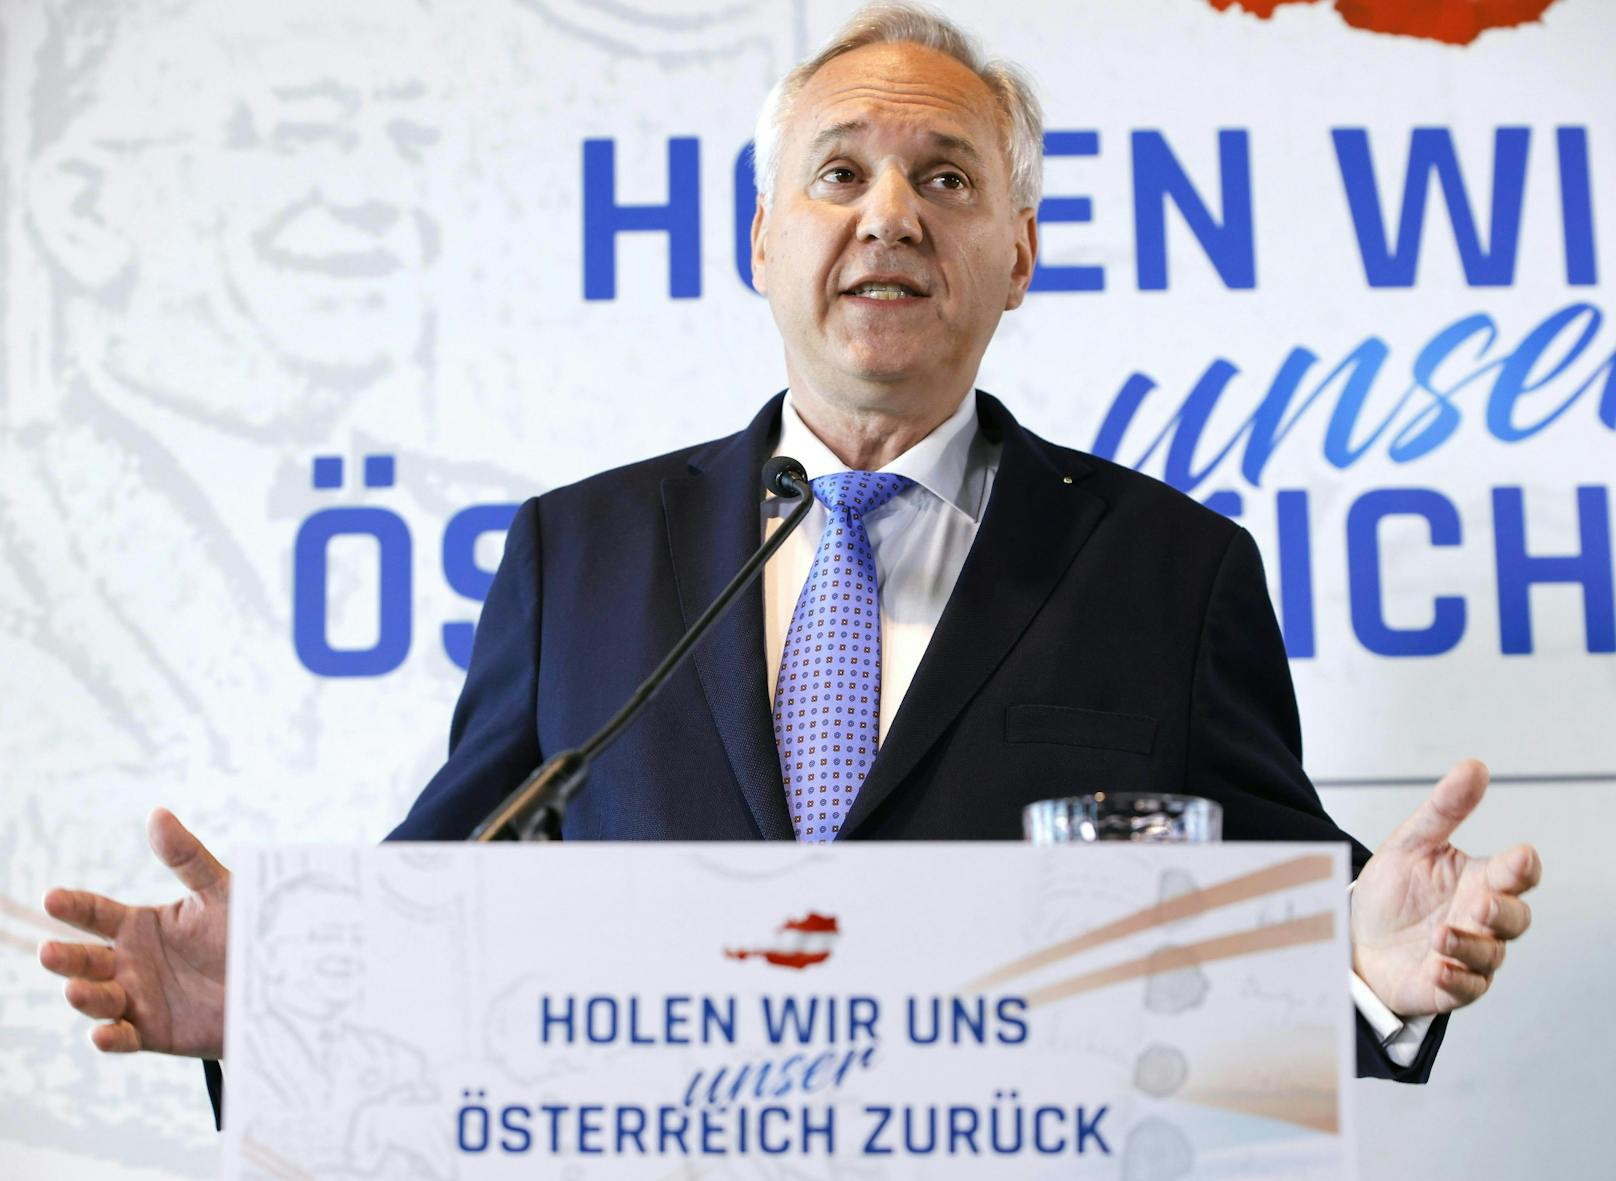 Fordert die Regierung zu unbürokratischer Hilfe auf: FPÖ-Bundespräsidentschaftskandidat Walter Rosenkranz.